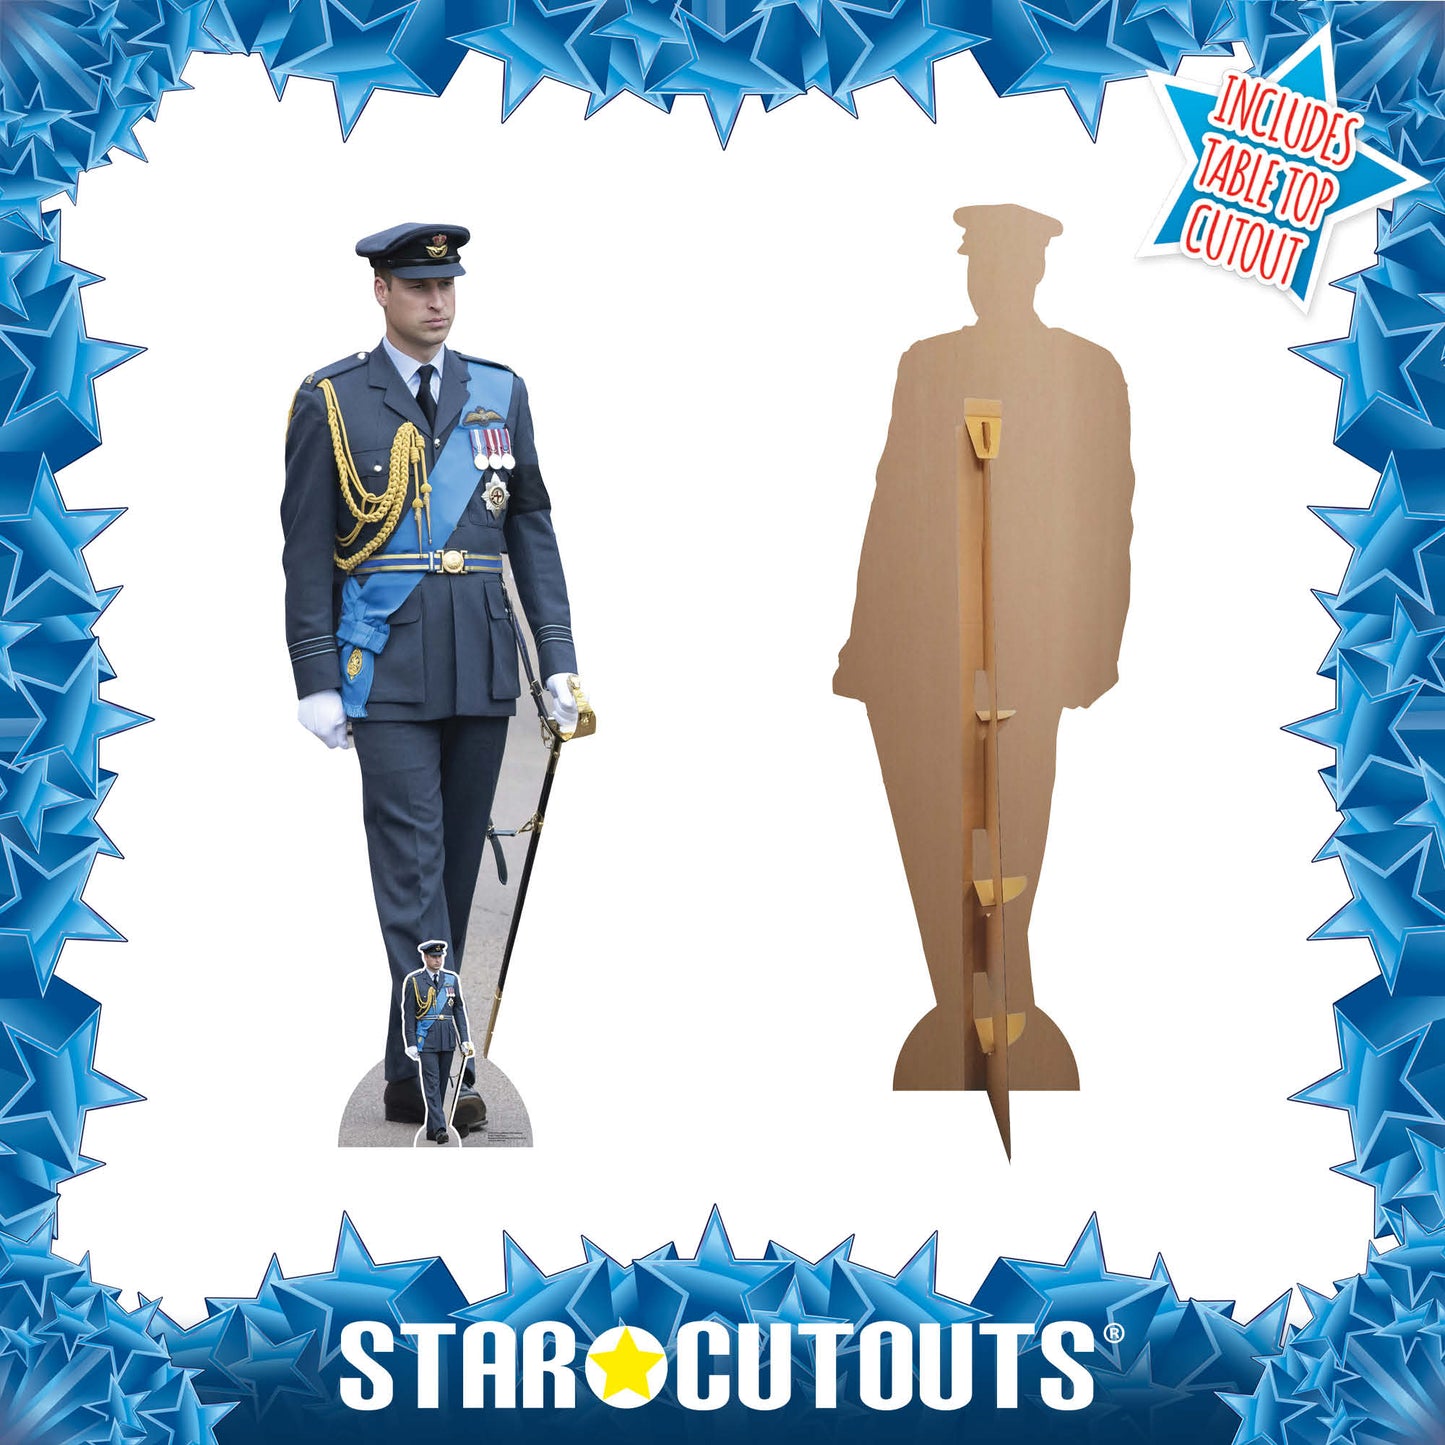 Prince William RAF Uniform Cardboard Cutout